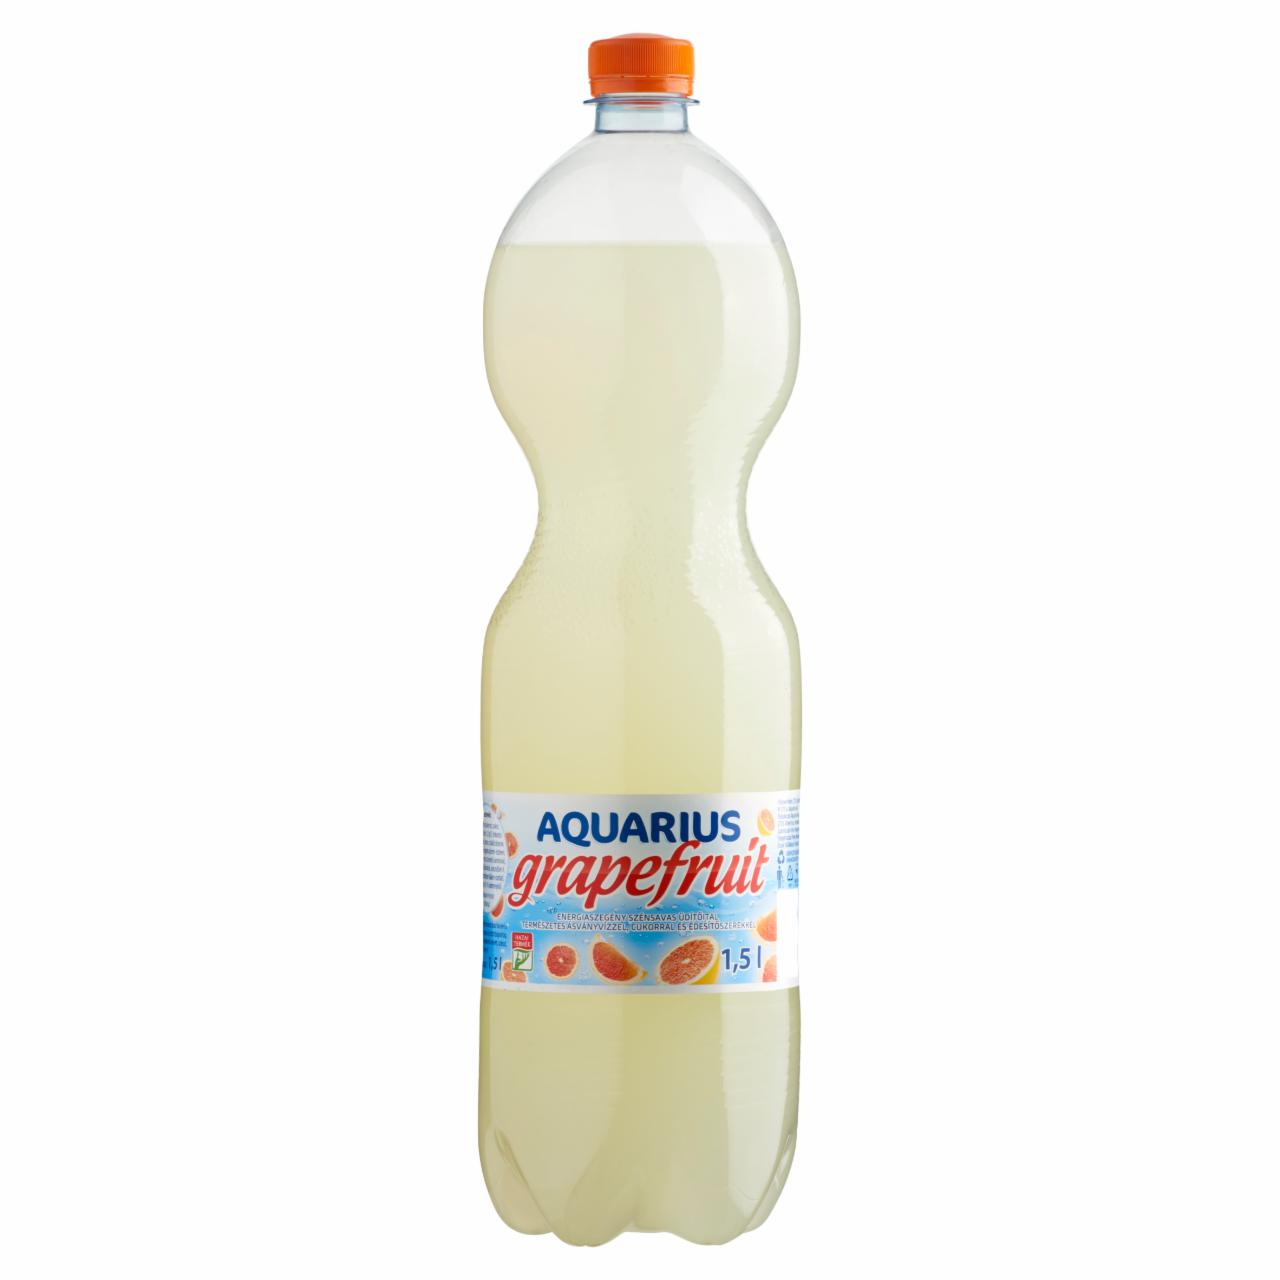 Képek - Aquarius grapefruit energiaszegény szénsavas üdítőital cukorral és édesítőszerekkel 1,5 l